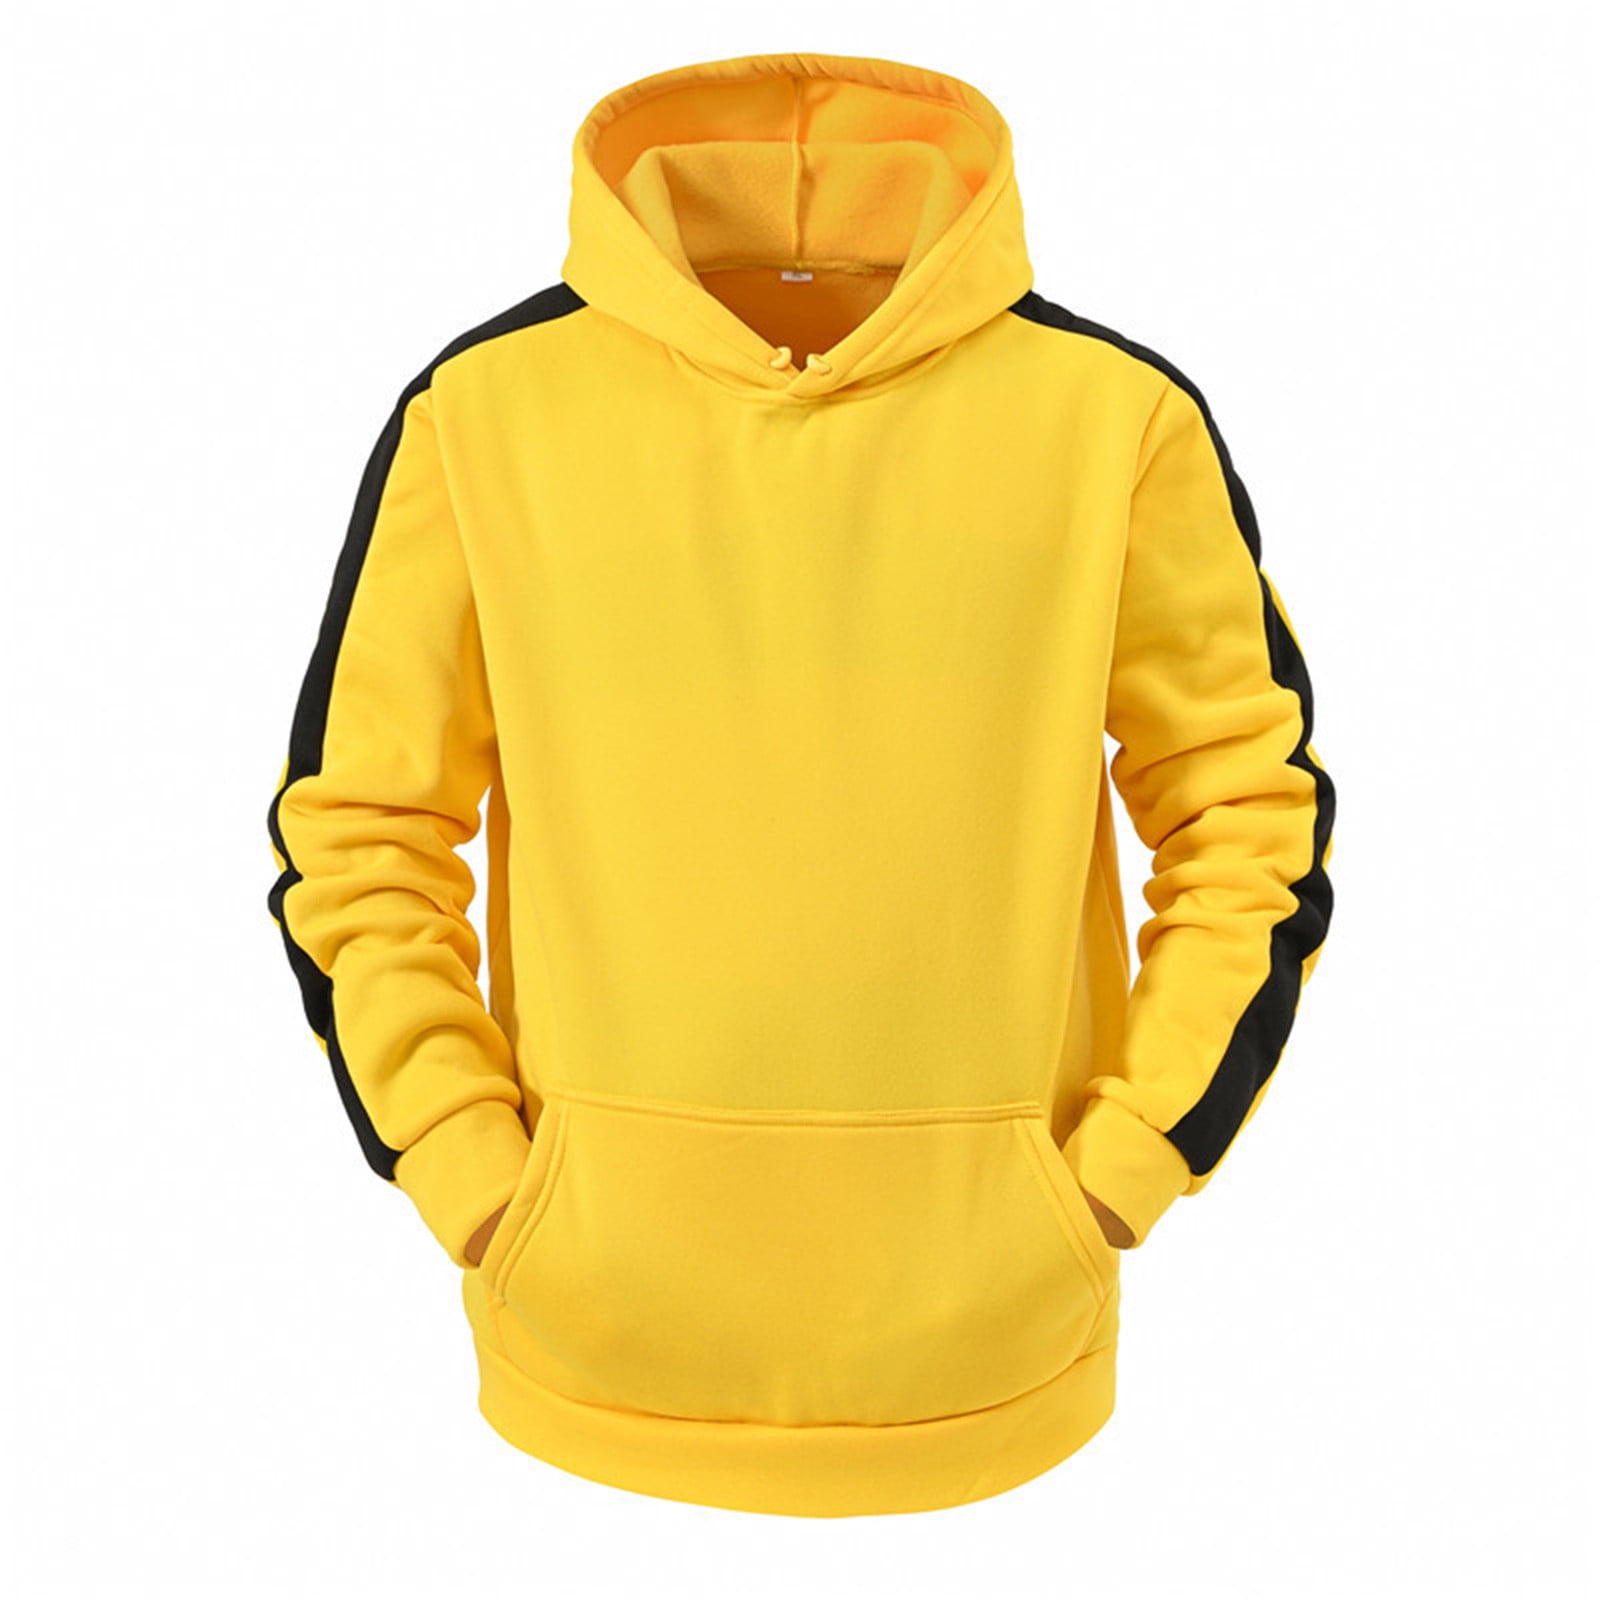 LEEy-world Hoodies for Men Full-Zip Hooded Sweatshirt Slim Fit Softshell  Hoody Jacket Cool Hoodies Yellow,L